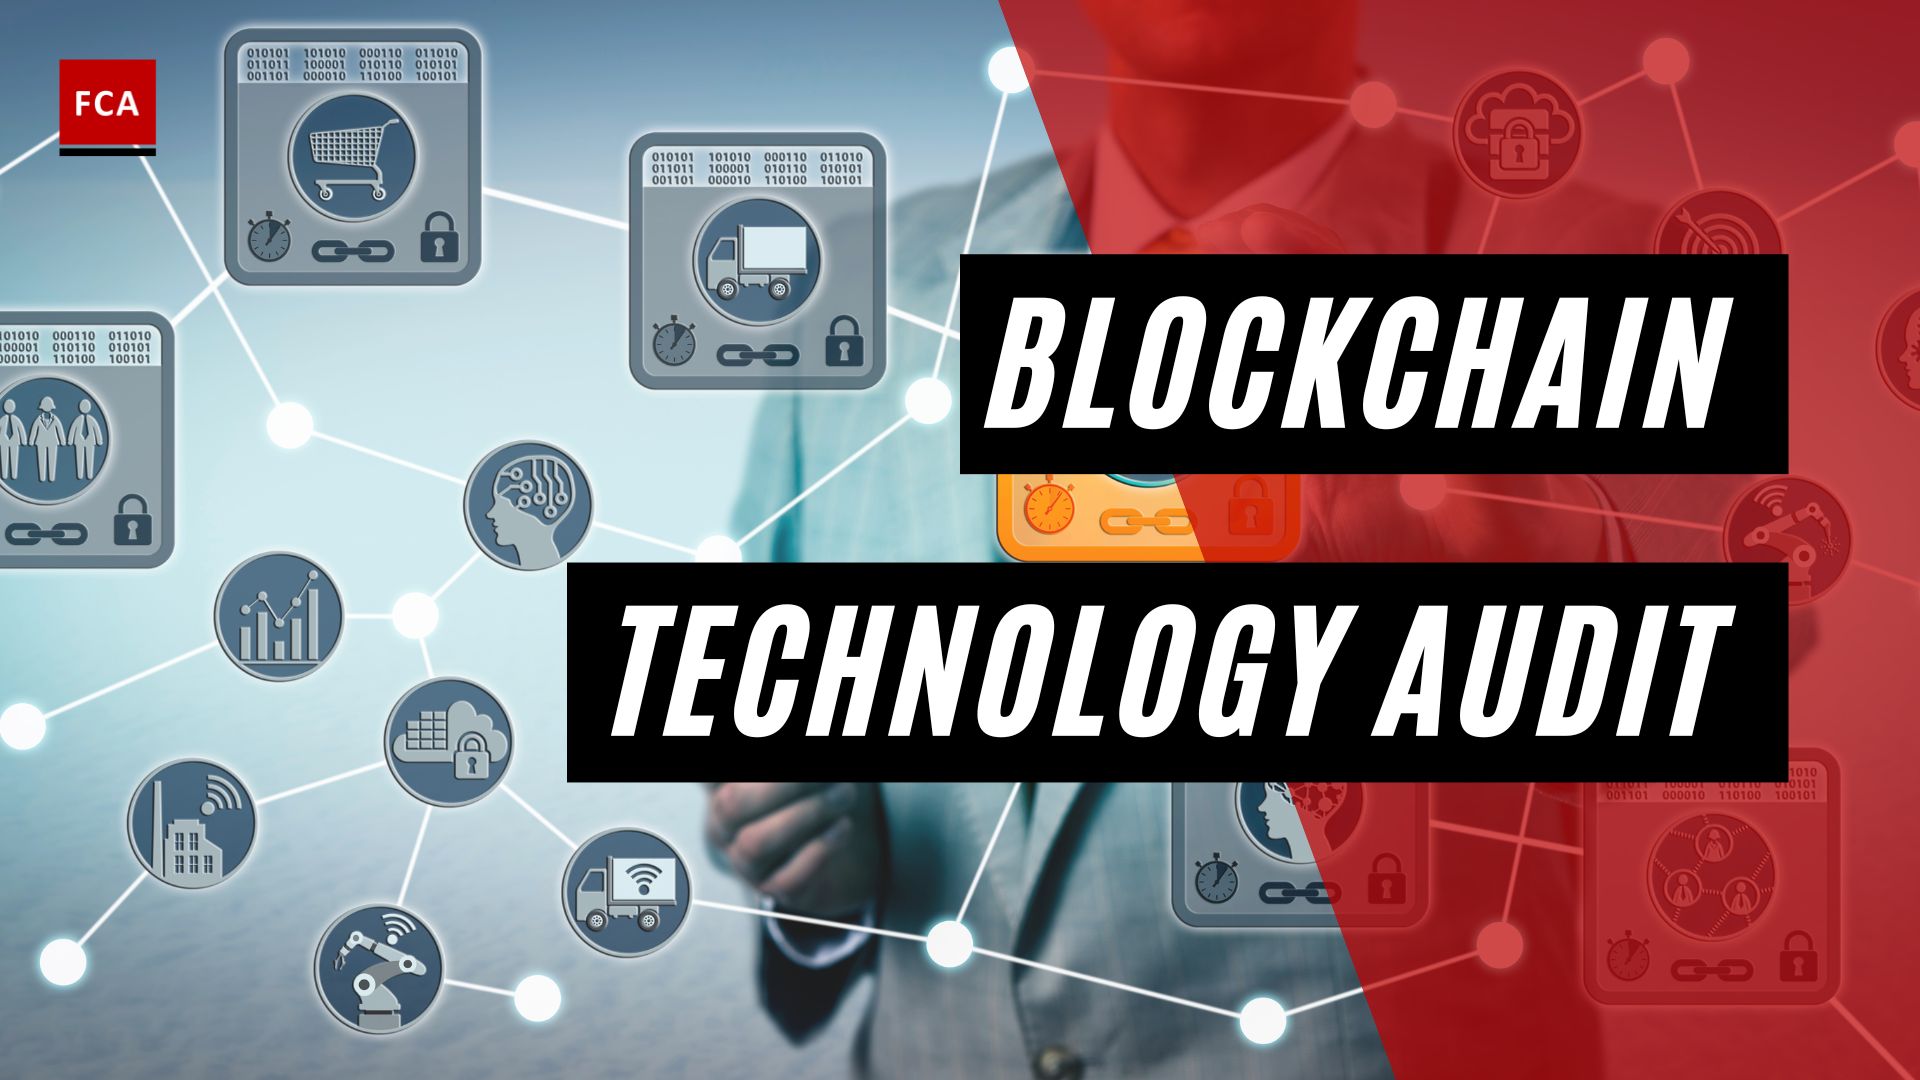 Blockchain Technology Audit